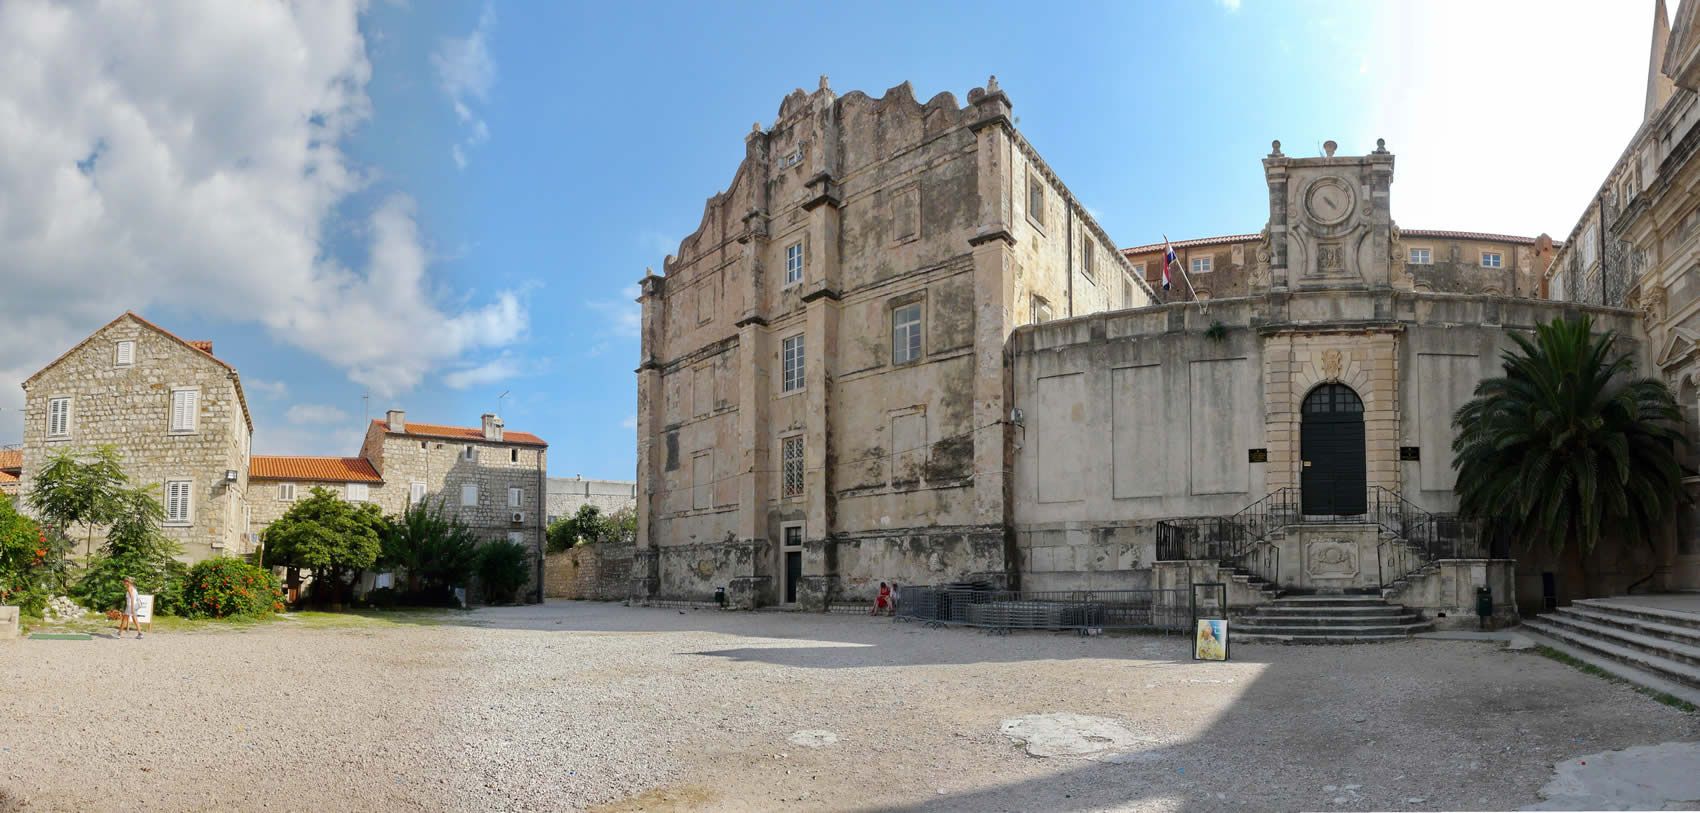 والپیپر بنای تاریخی دوست داشتنی در کشور کرواسی در کیفیت 8k